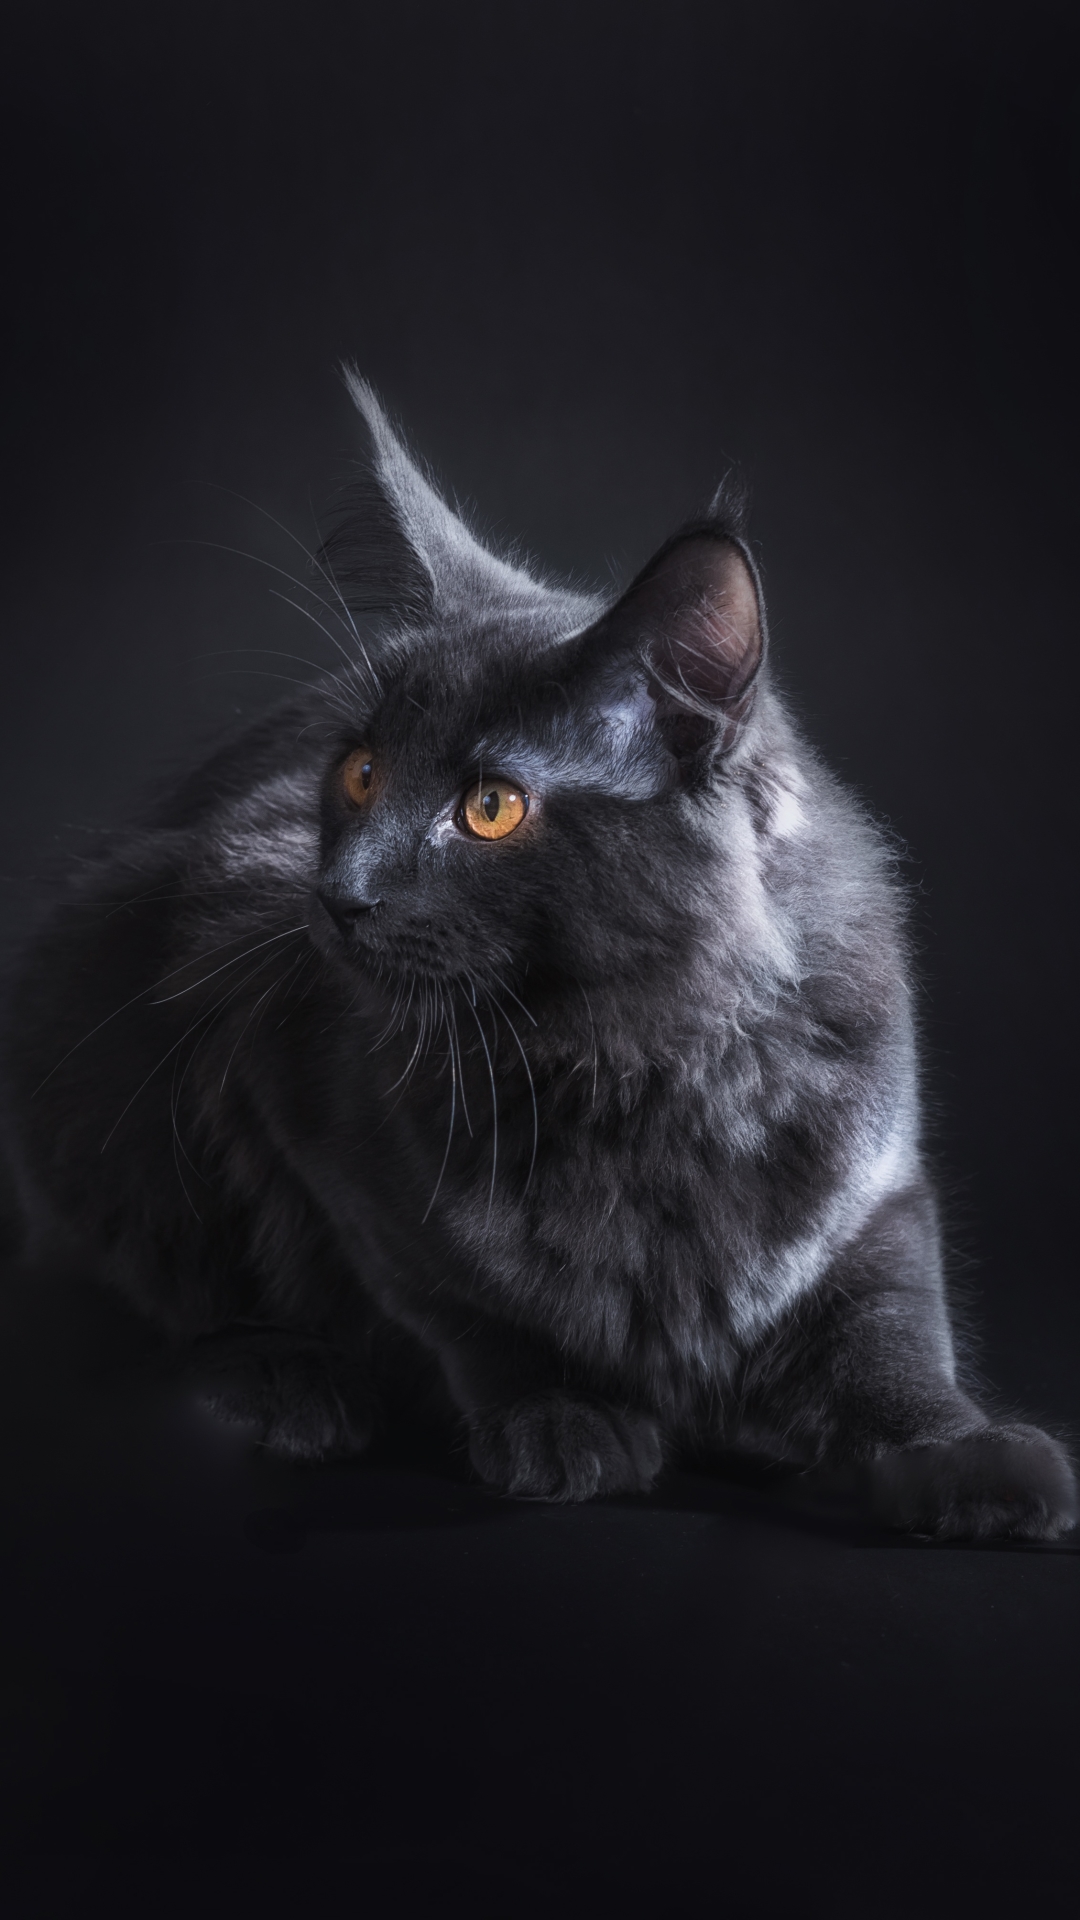 Descarga gratuita de fondo de pantalla para móvil de Animales, Gatos, Gato, Retrato.